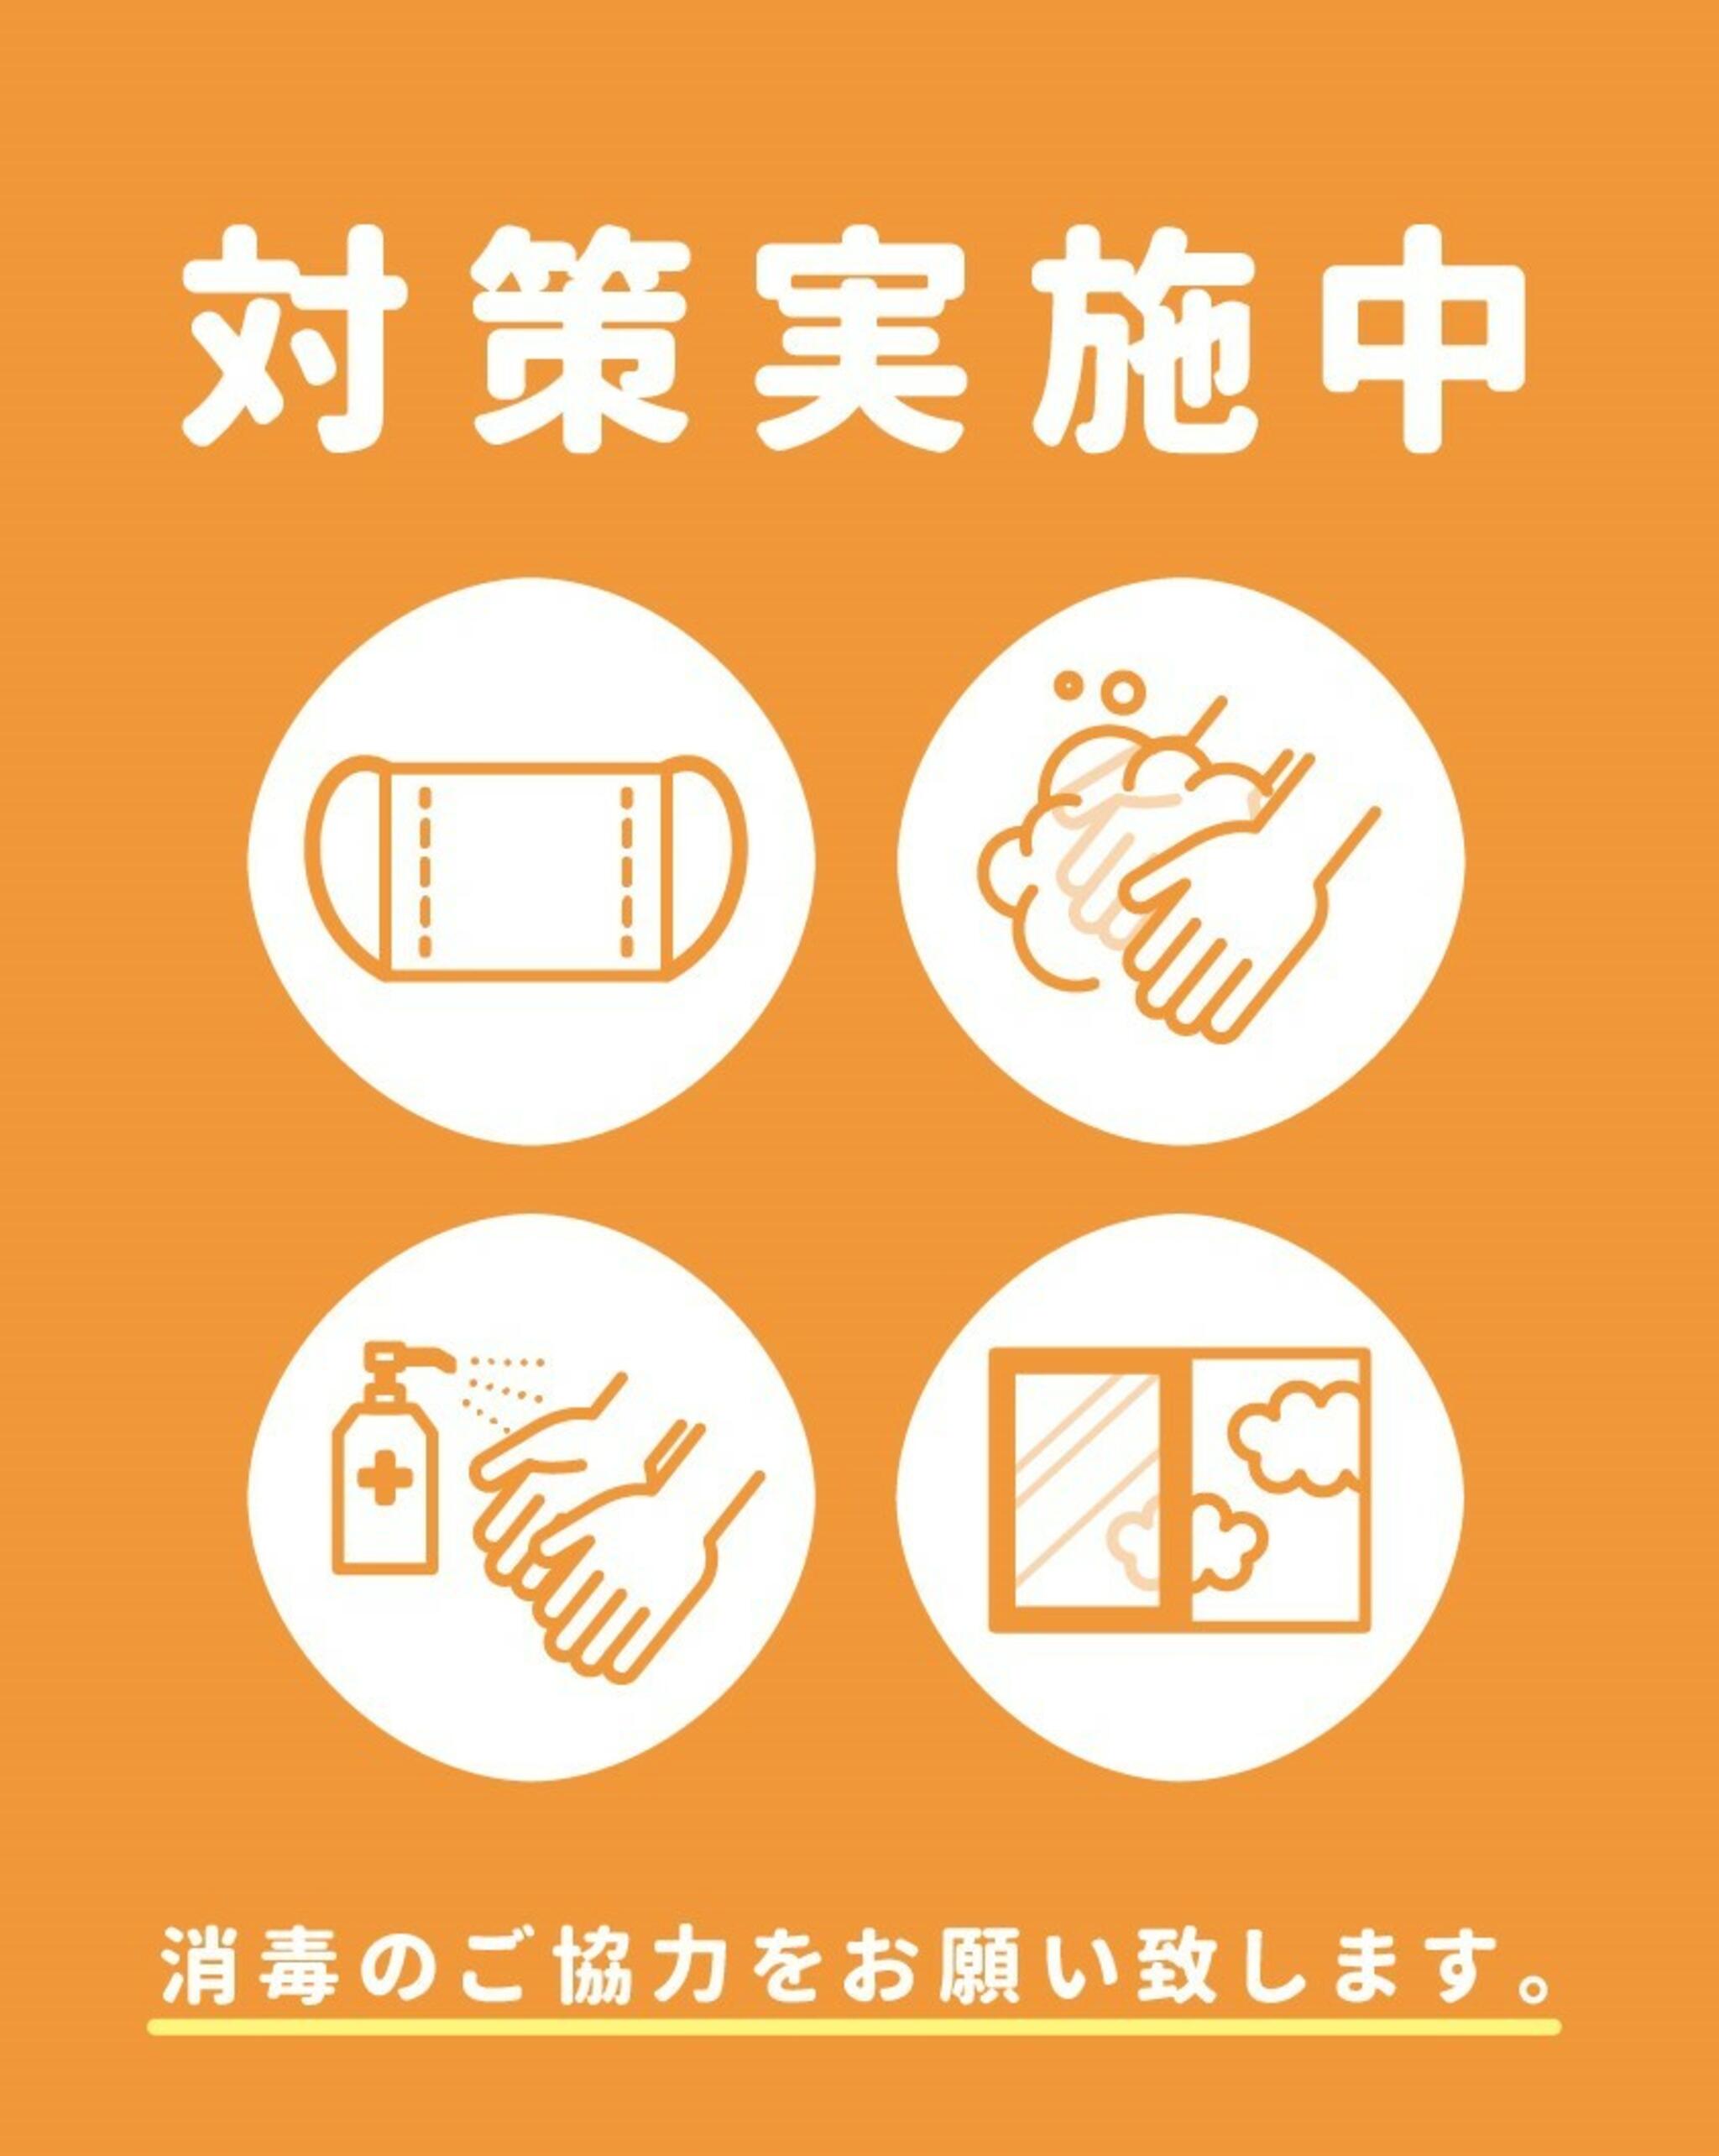 神戸三宮むつう整体院からのお知らせ(感染症予防対策を強化中)に関する写真